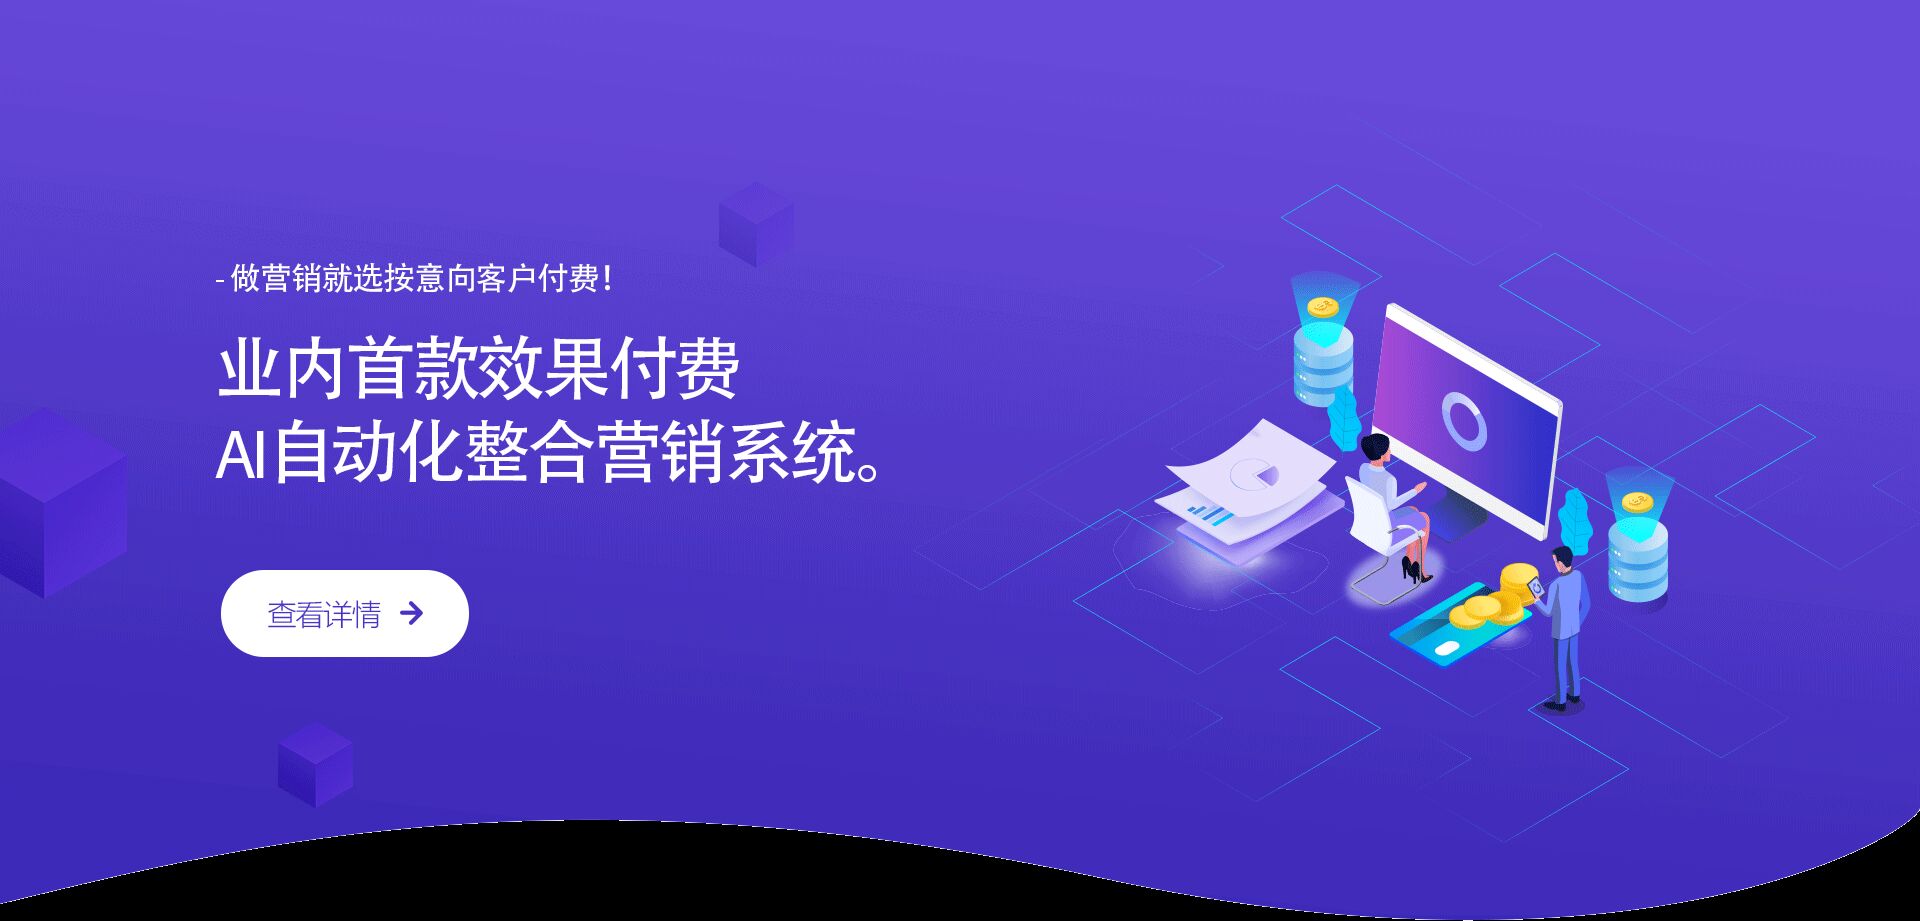 寻找精准客户营销服务_ 大数据精准客户相关-上海琥源科技有限公司